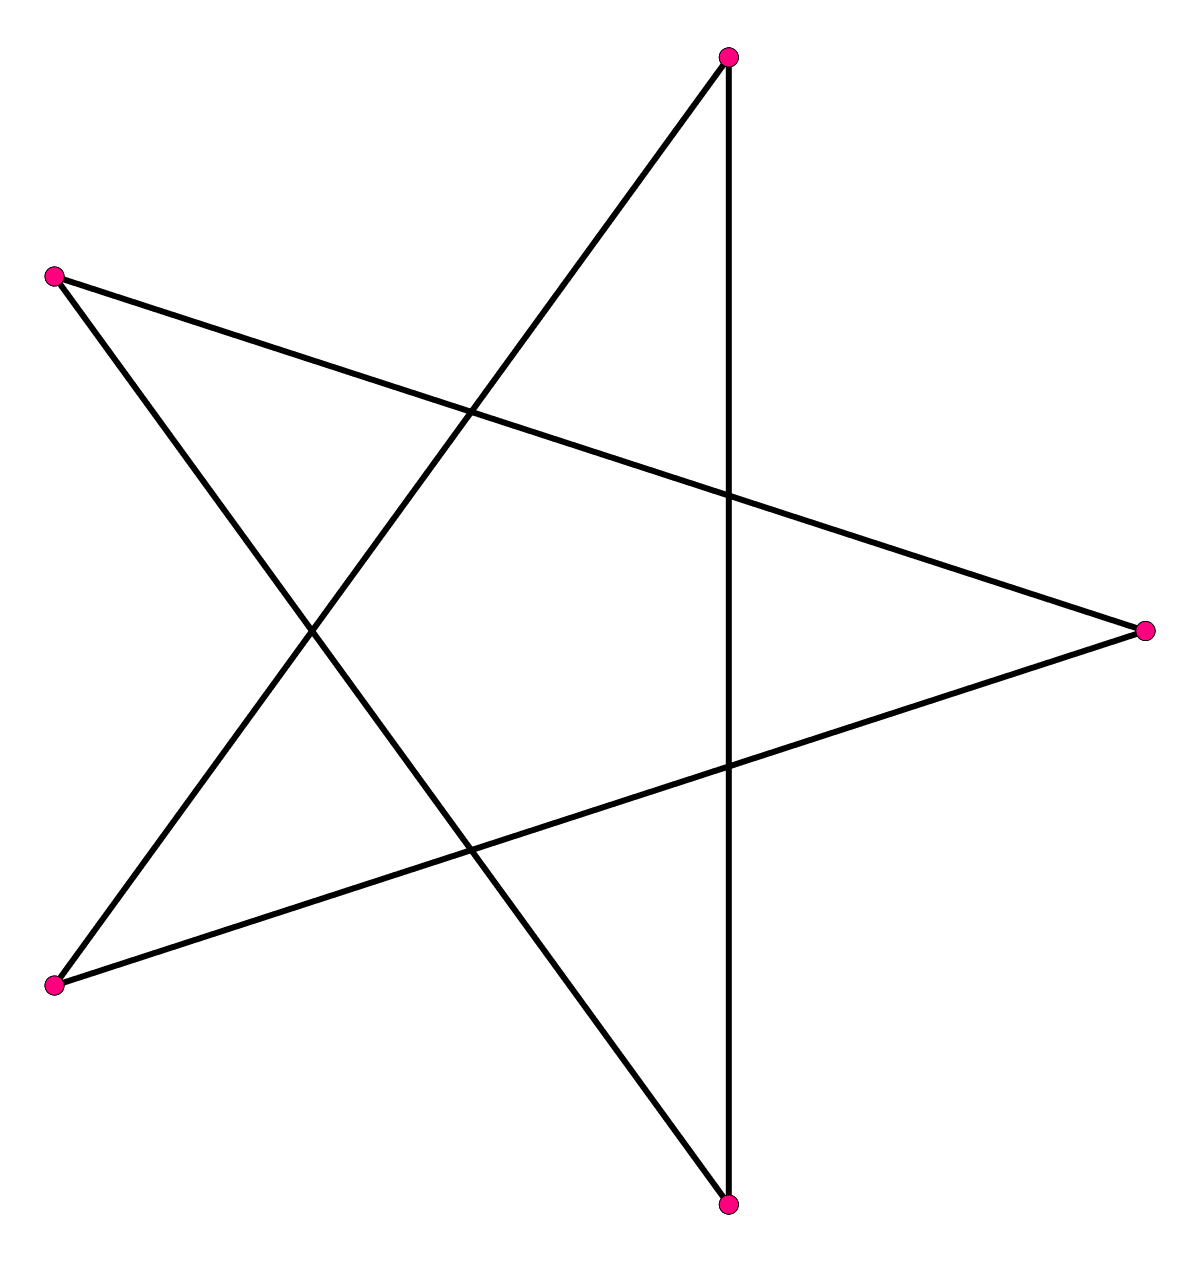 Desenho de estrela- Confira 5 métodos com passo a passo bem simples